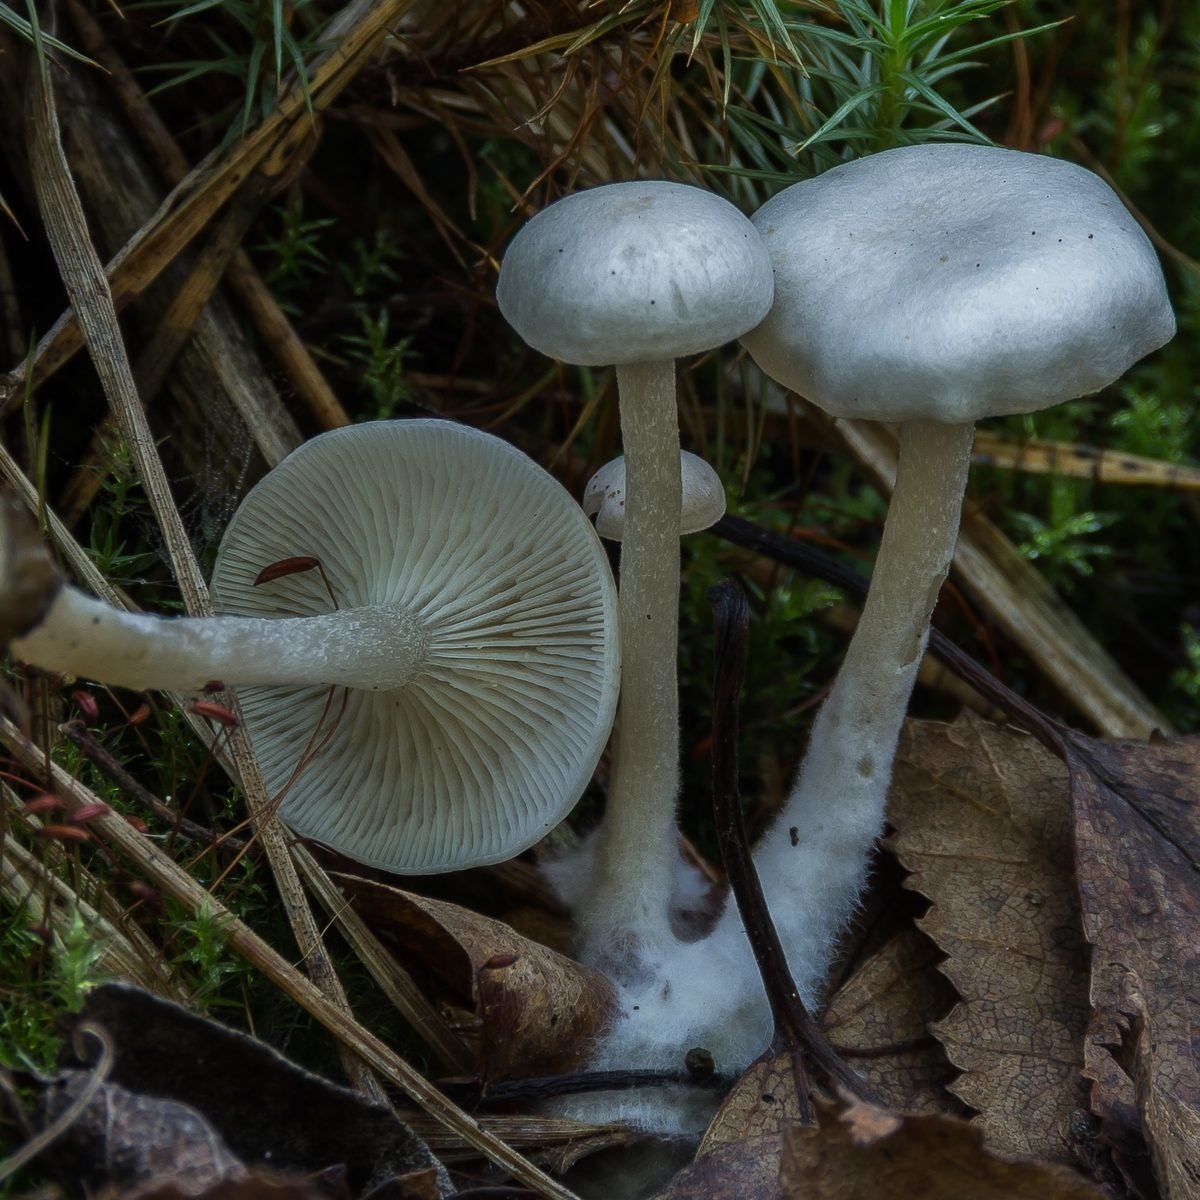 Съедобные и несъедобные грибы говорушки и их описание (+39 фото)